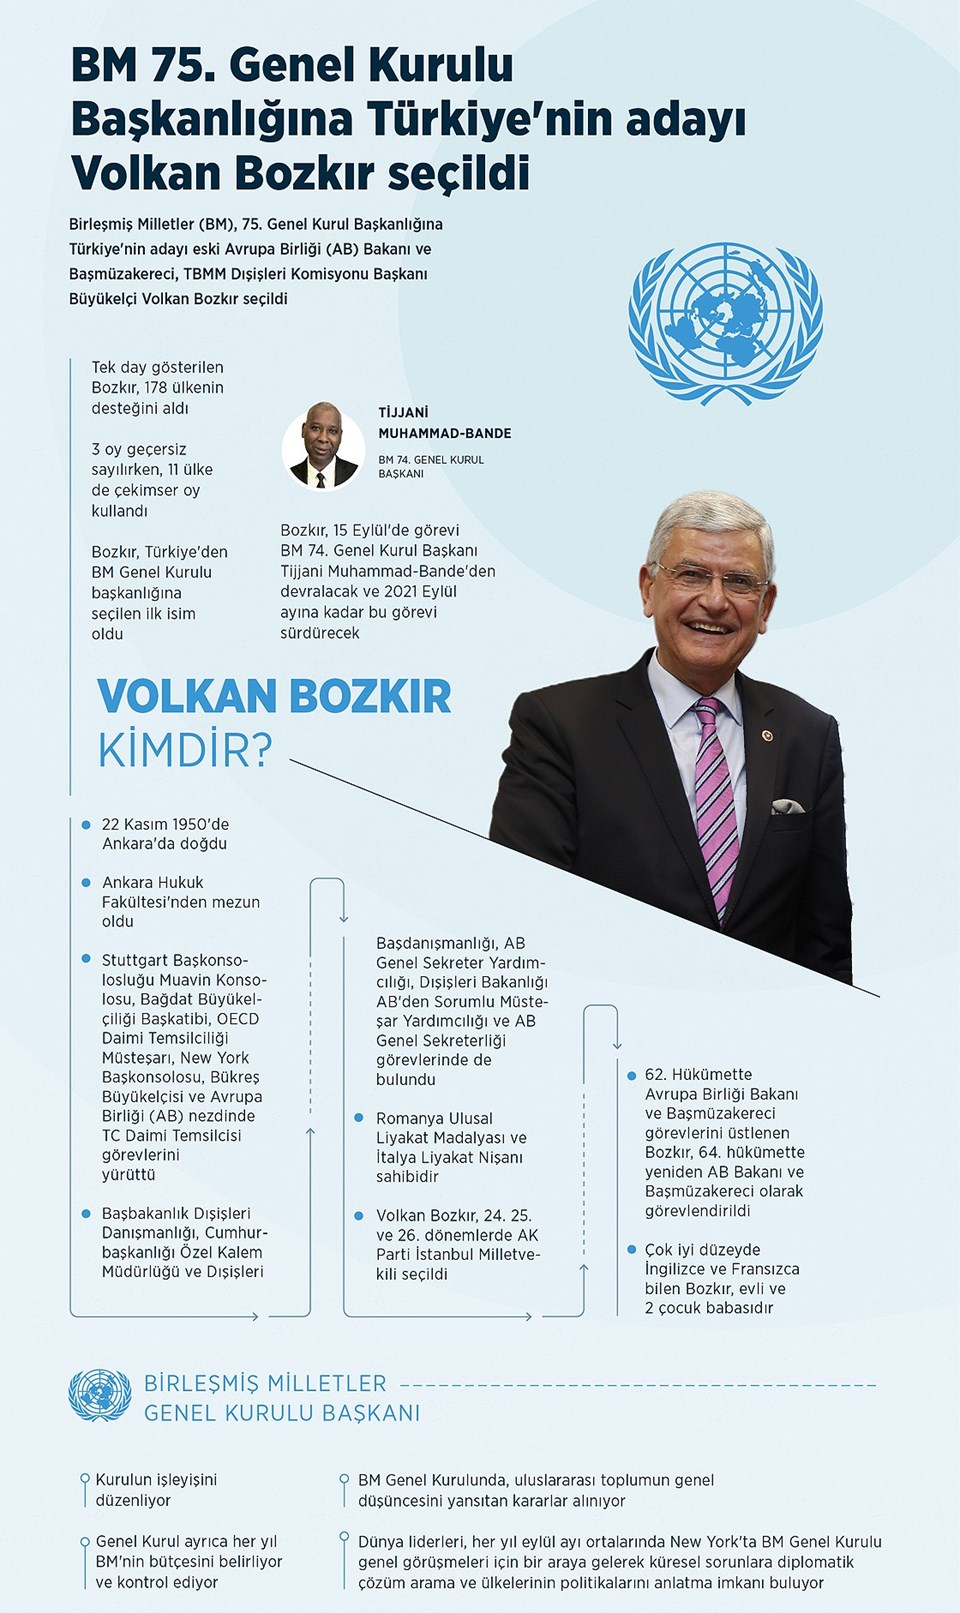 BM'nin 75. Genel Kurul Başkanlığı'na seçilen Volkan Bozkır'dan açıklama - 2